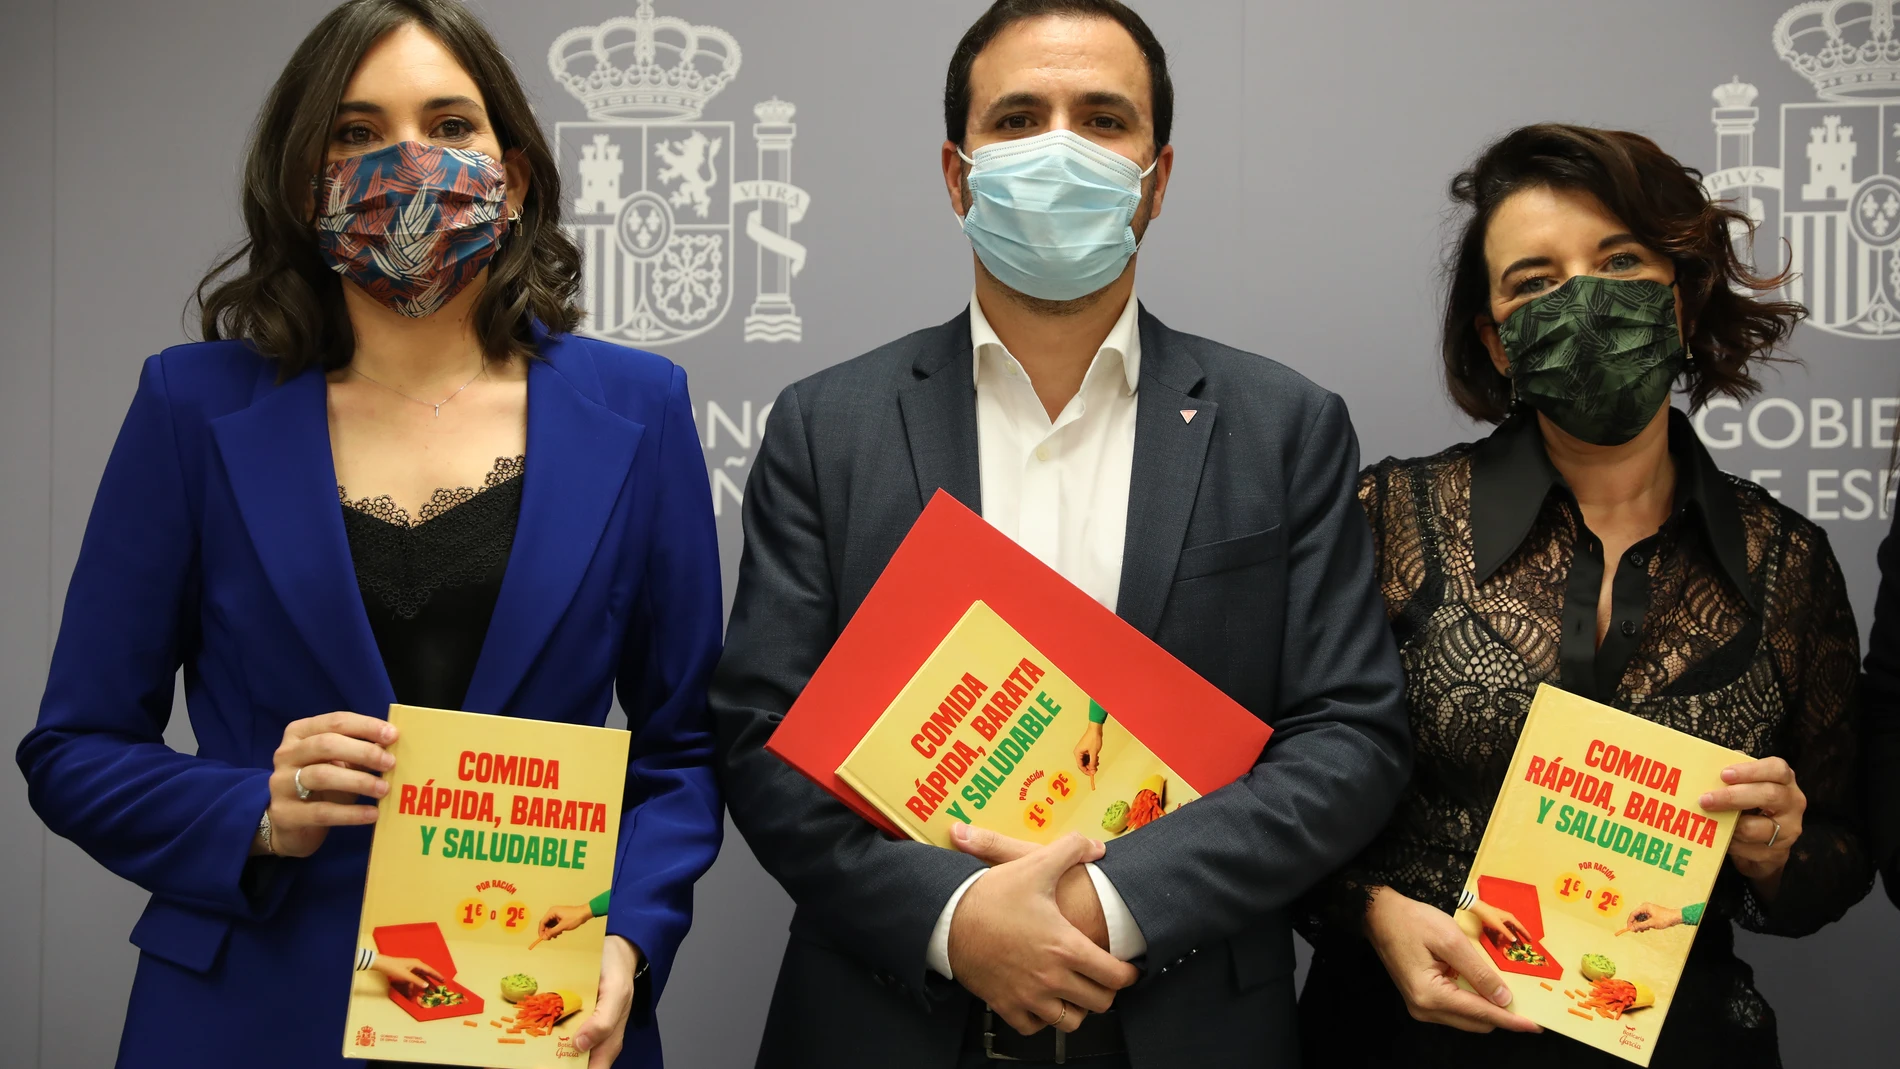 La autora del recetario editado, Marian García, y el ministro de Consumo, Alberto Garzón, posan durante la presentación del libro 'Comida rápida, barata y saludable' en el Ministerio de Consumo